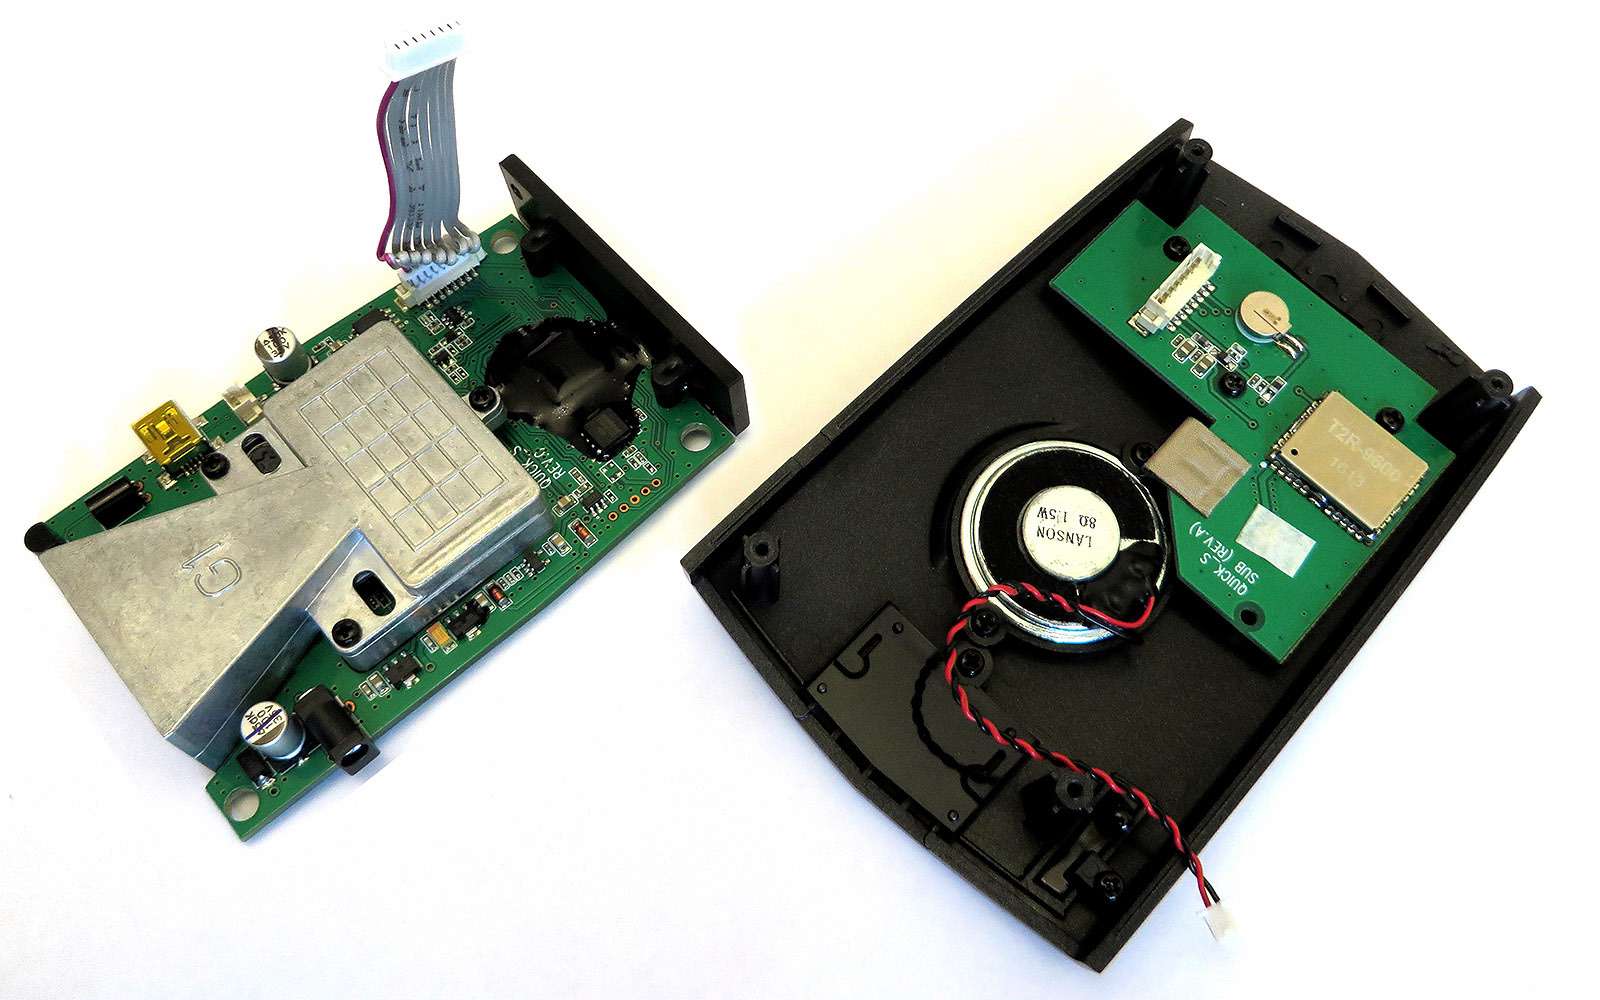 Из-за компактного корпуса Playme Soft вывод GPS-антенны оказался в непосредственной близости от рупорной антенны. Контакт заизолировали бумажным скотчем (на фото справа), но практичнее в данном случае использовать изоленту.